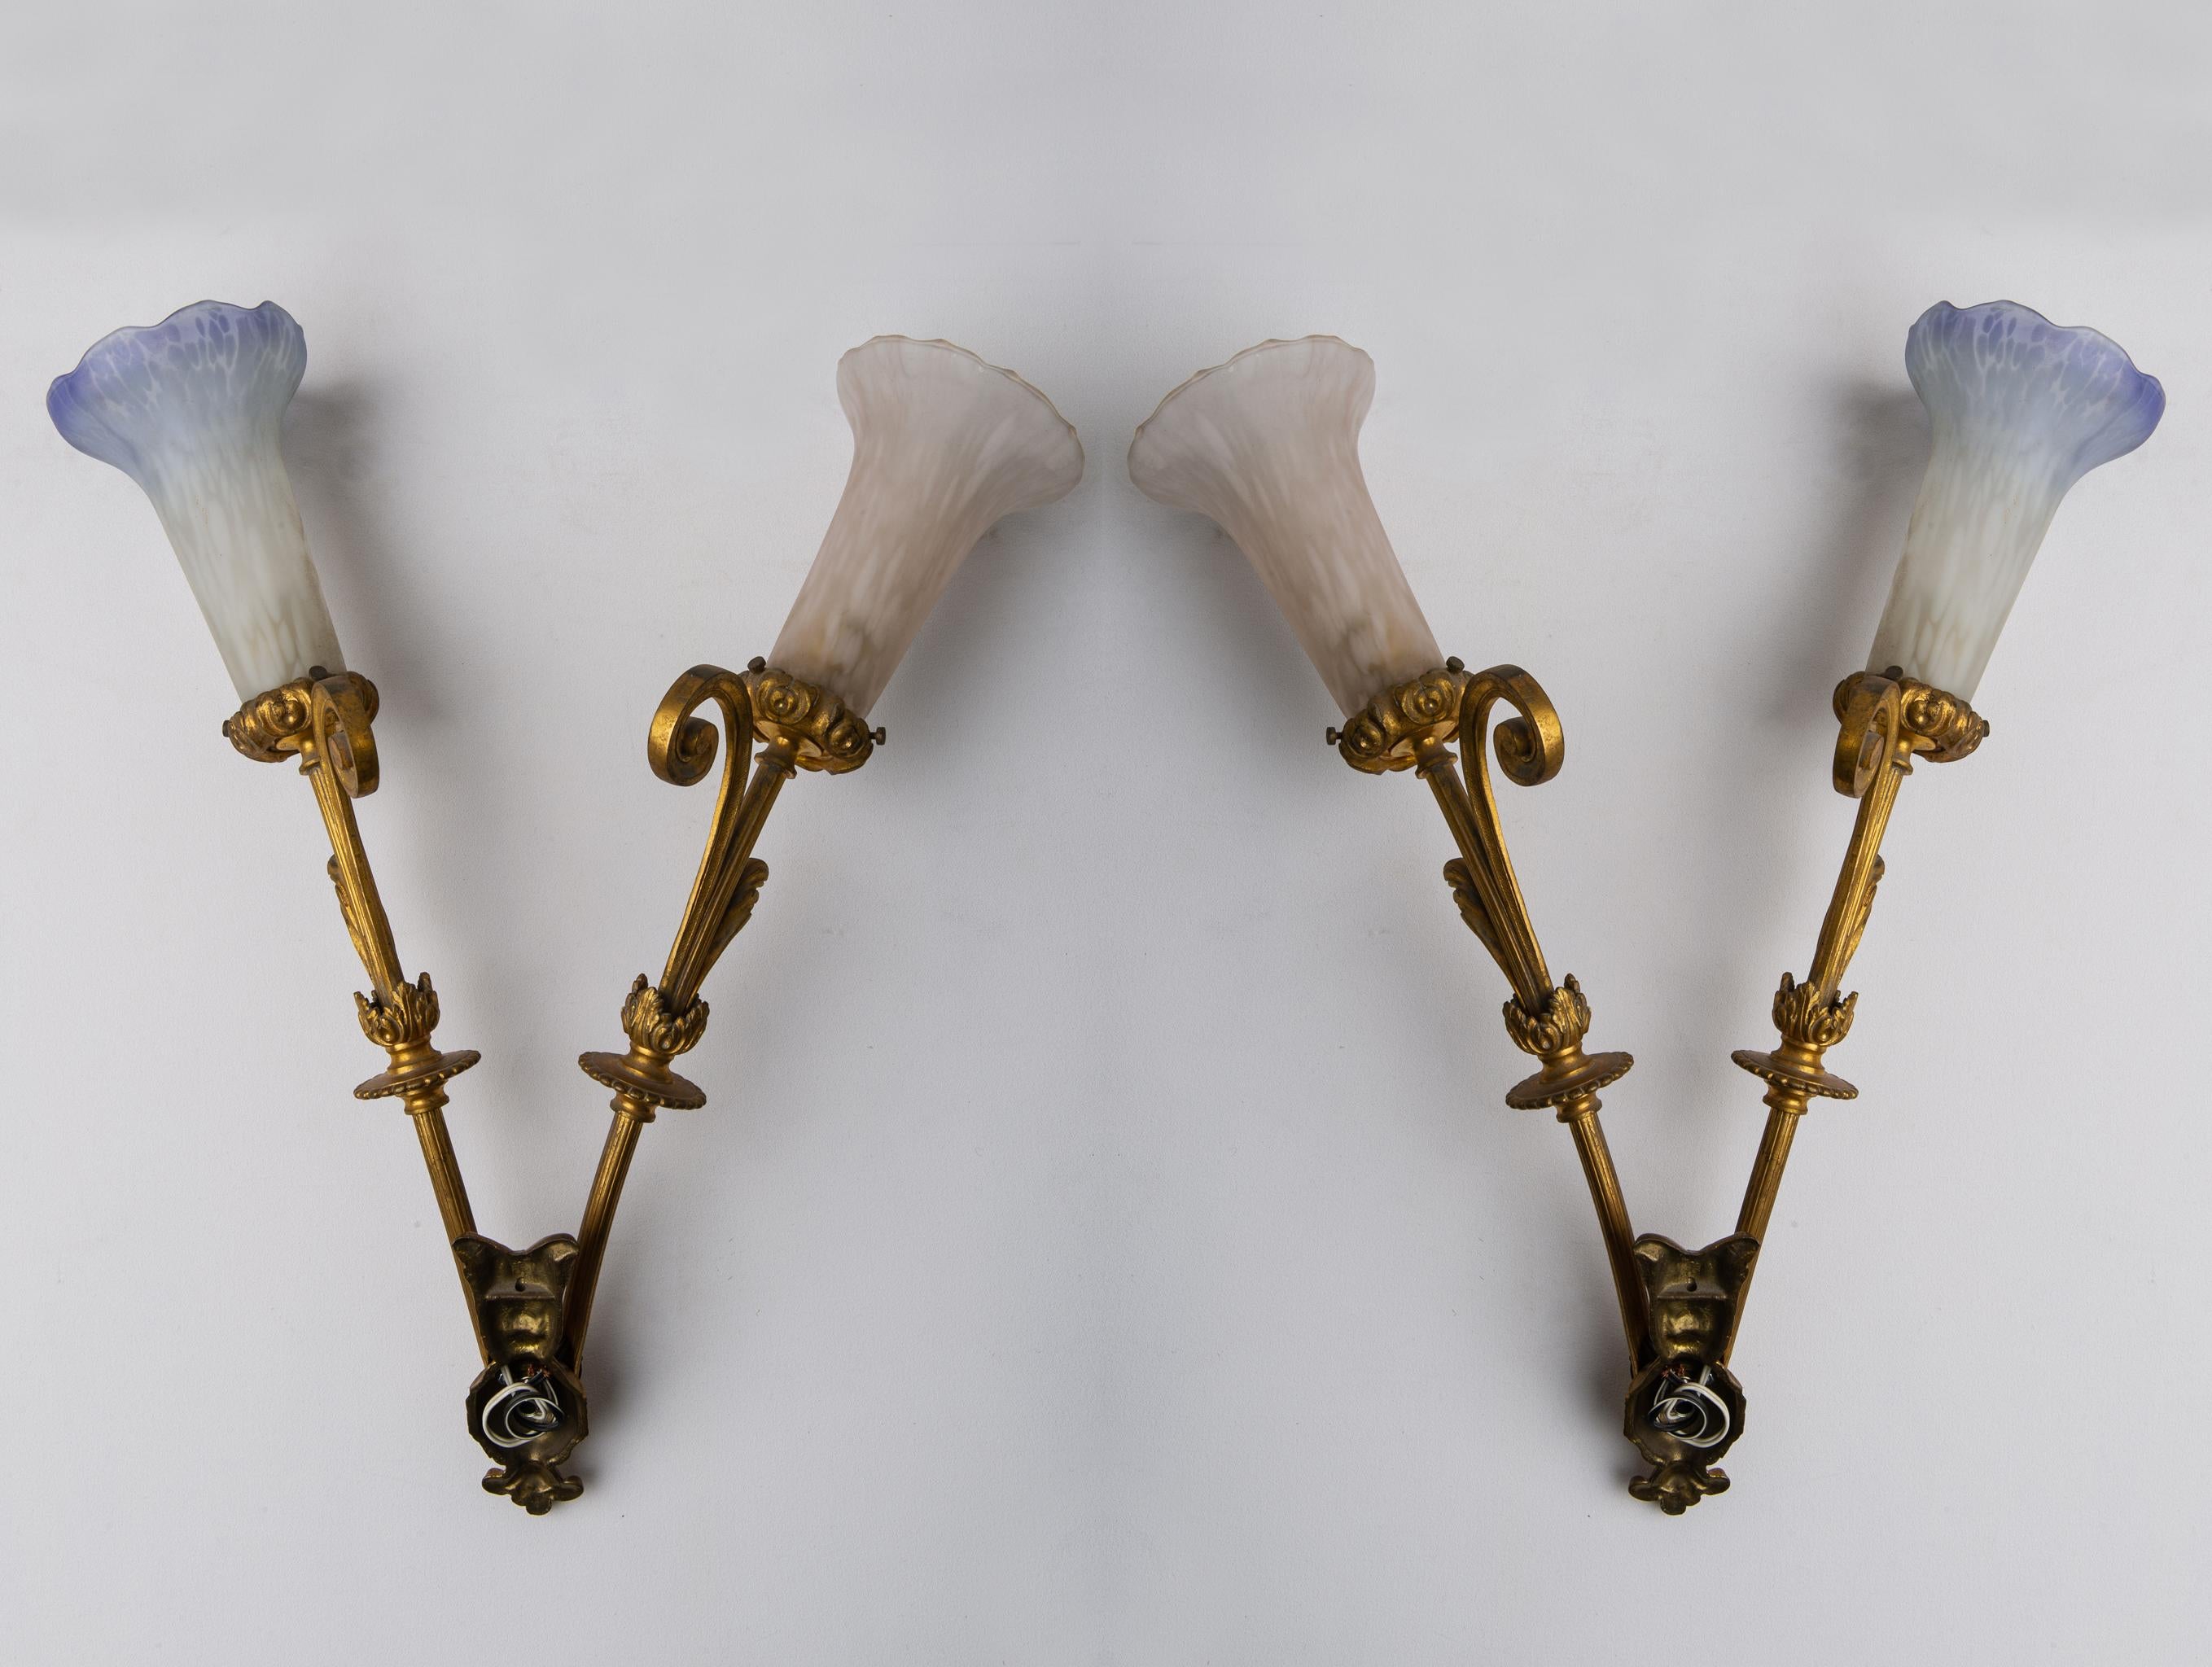 Elegante Wandlampen aus Bronze, mit originellen farbigen Gläsern, geeignet an den Seiten eines Spiegels, eines Sofas, einer Kommode.
Es ist NICHT notwendig, die Stromversorgung zu ändern, sondern auch Ihre Lampen mit 110 W - 12 V zu